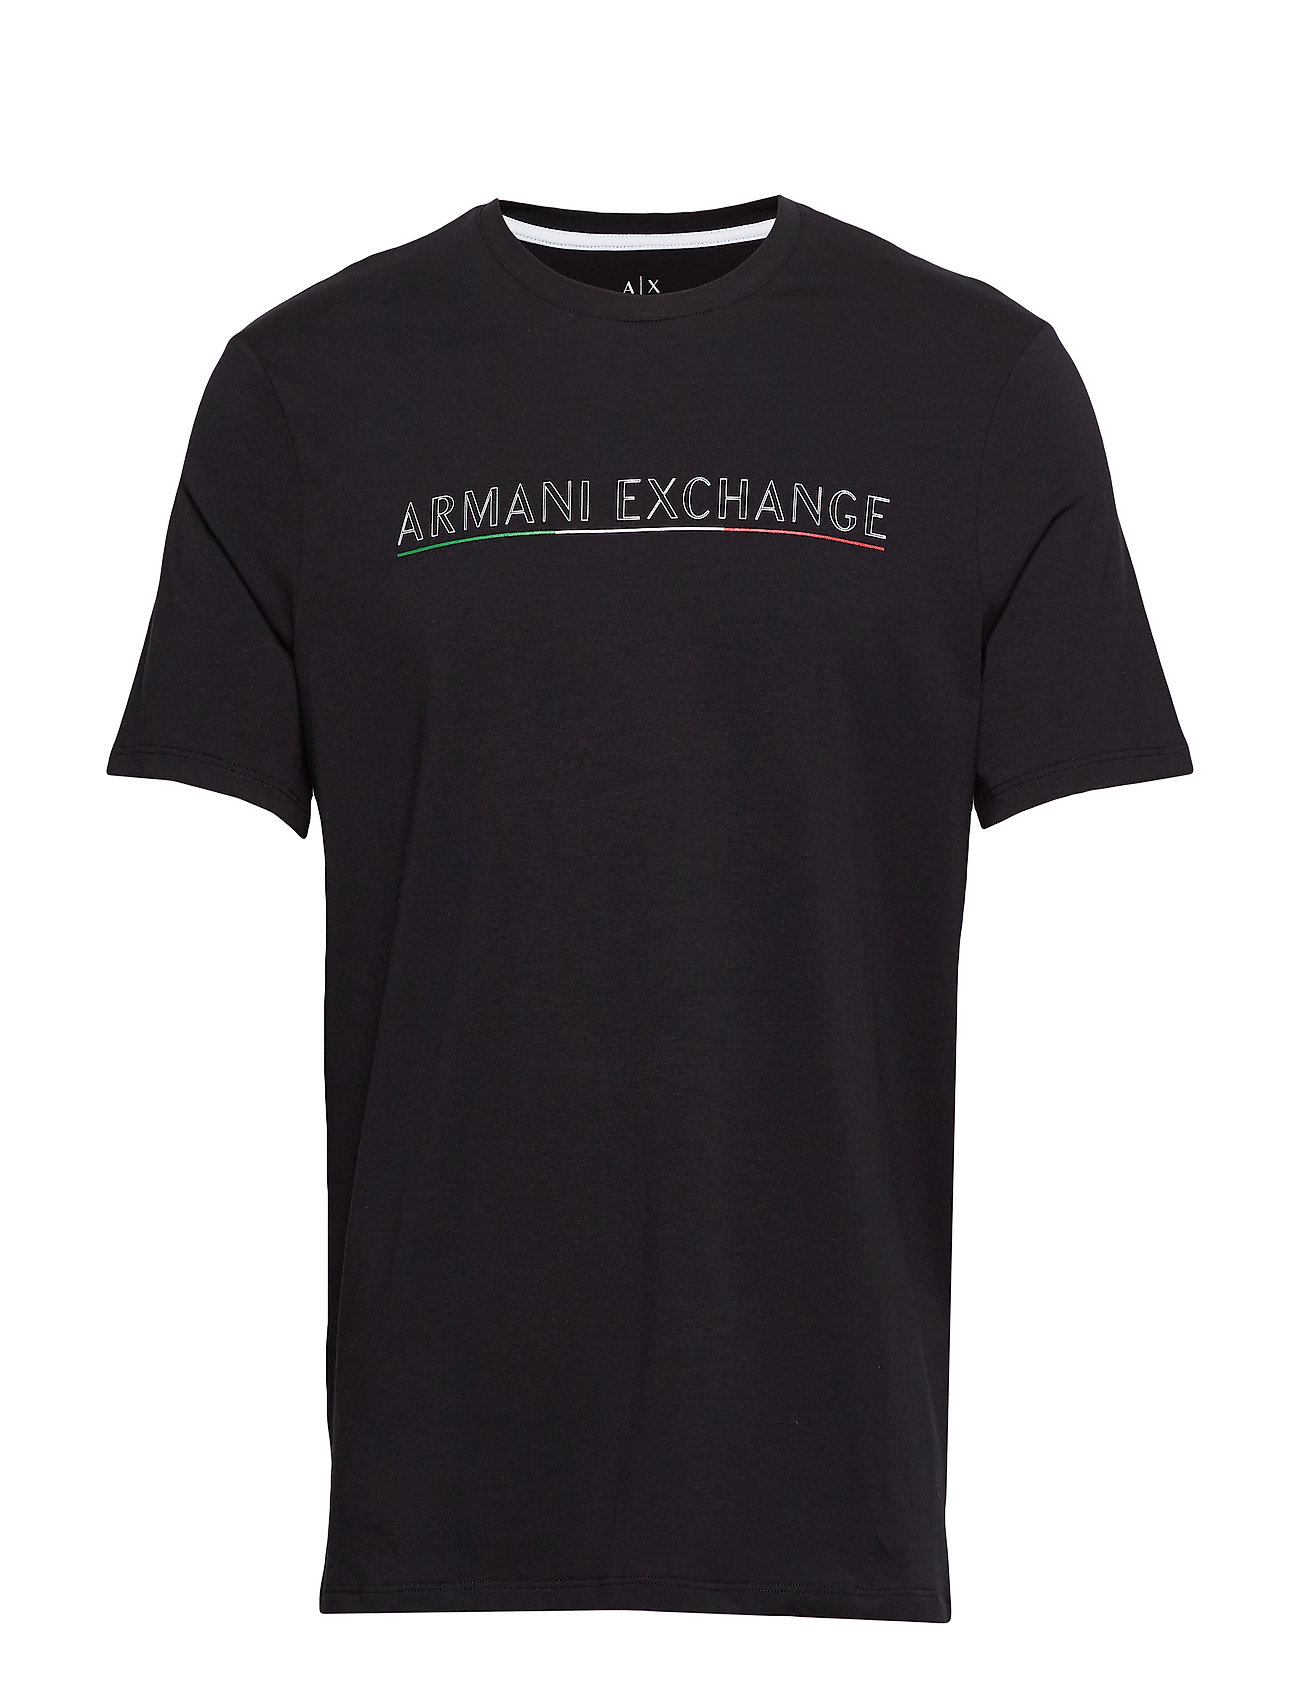 armani exchange tee shirt